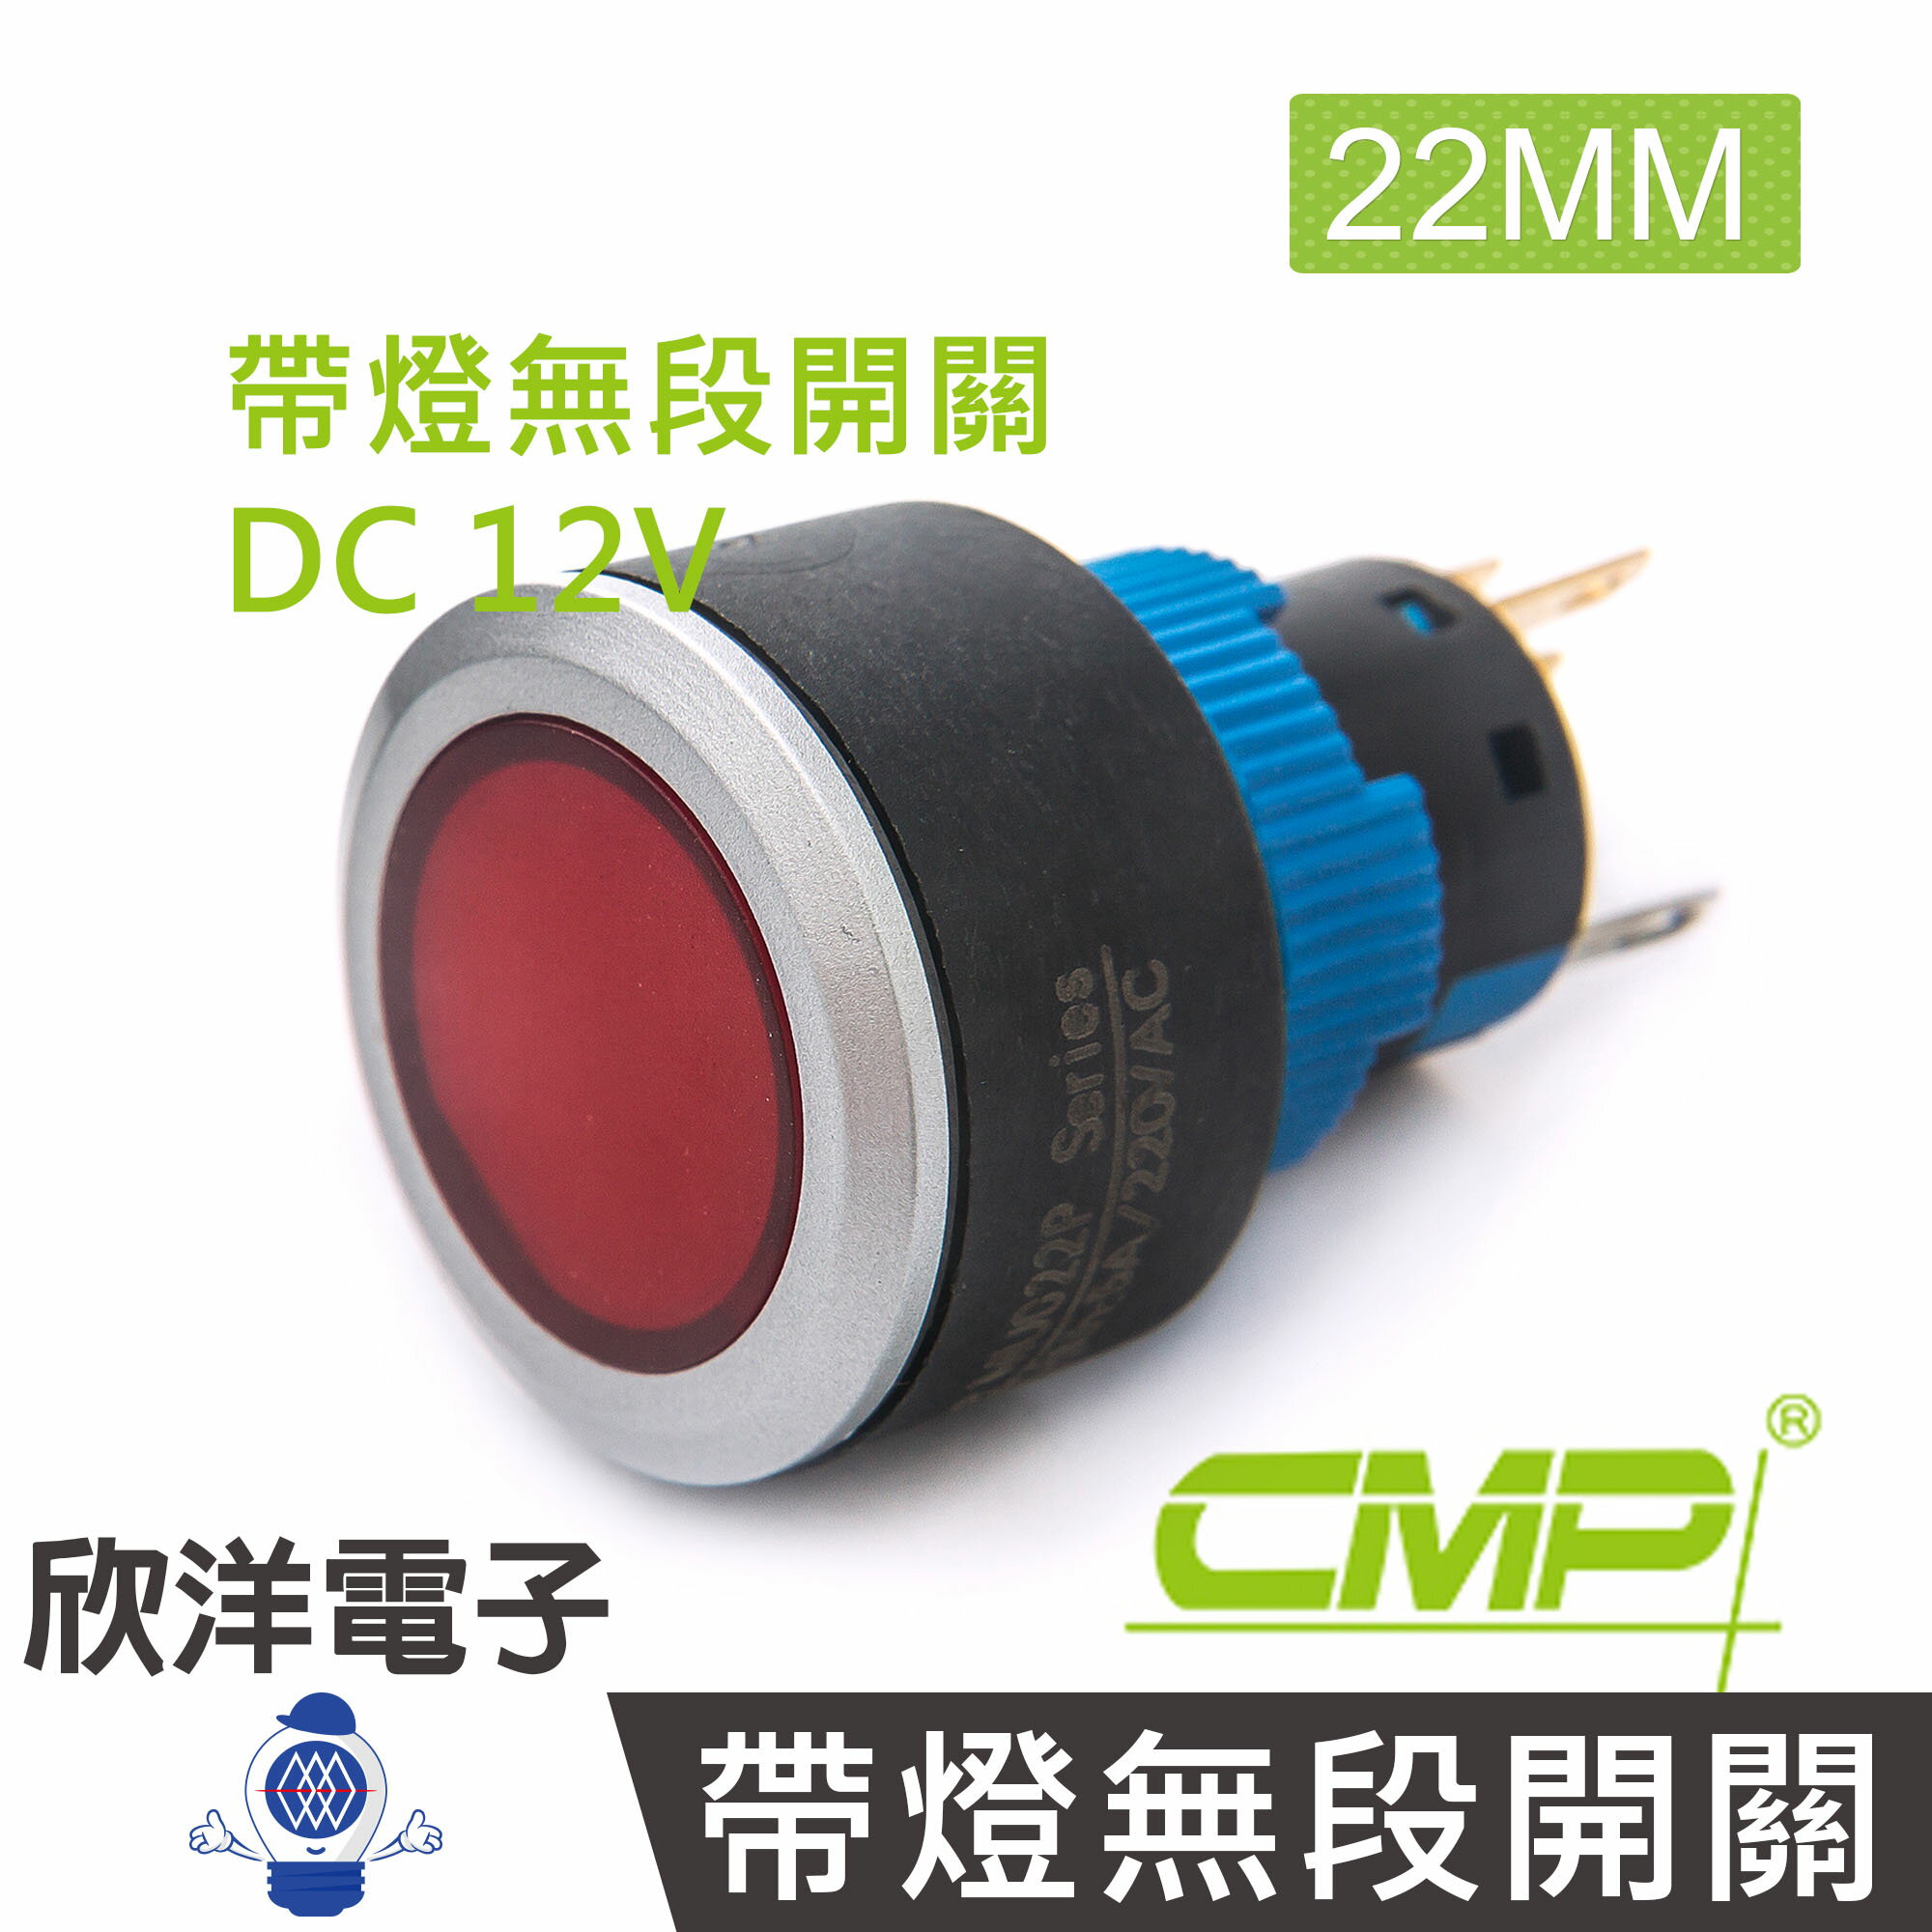 ※ 欣洋電子 ※ 22mm仿金屬塑料帶燈無段開關DC12V / P2202A-12V 藍、綠、紅、白、橙 五色光自由選購/ CMP西普